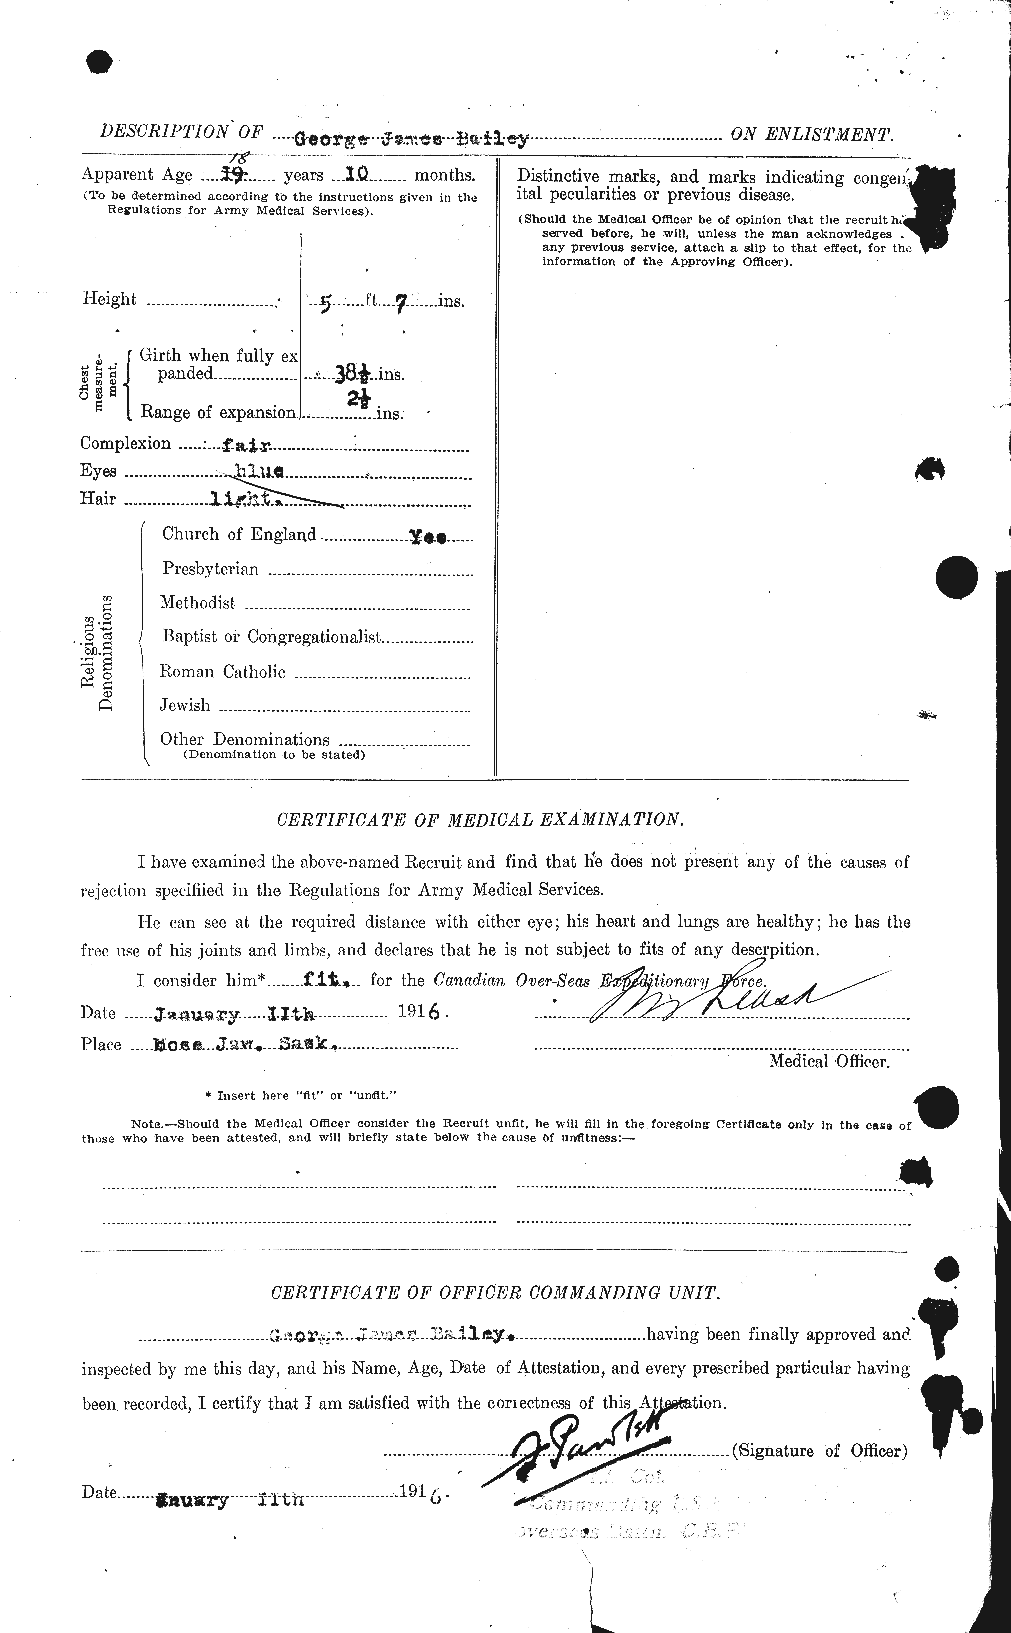 Dossiers du Personnel de la Première Guerre mondiale - CEC 218947b